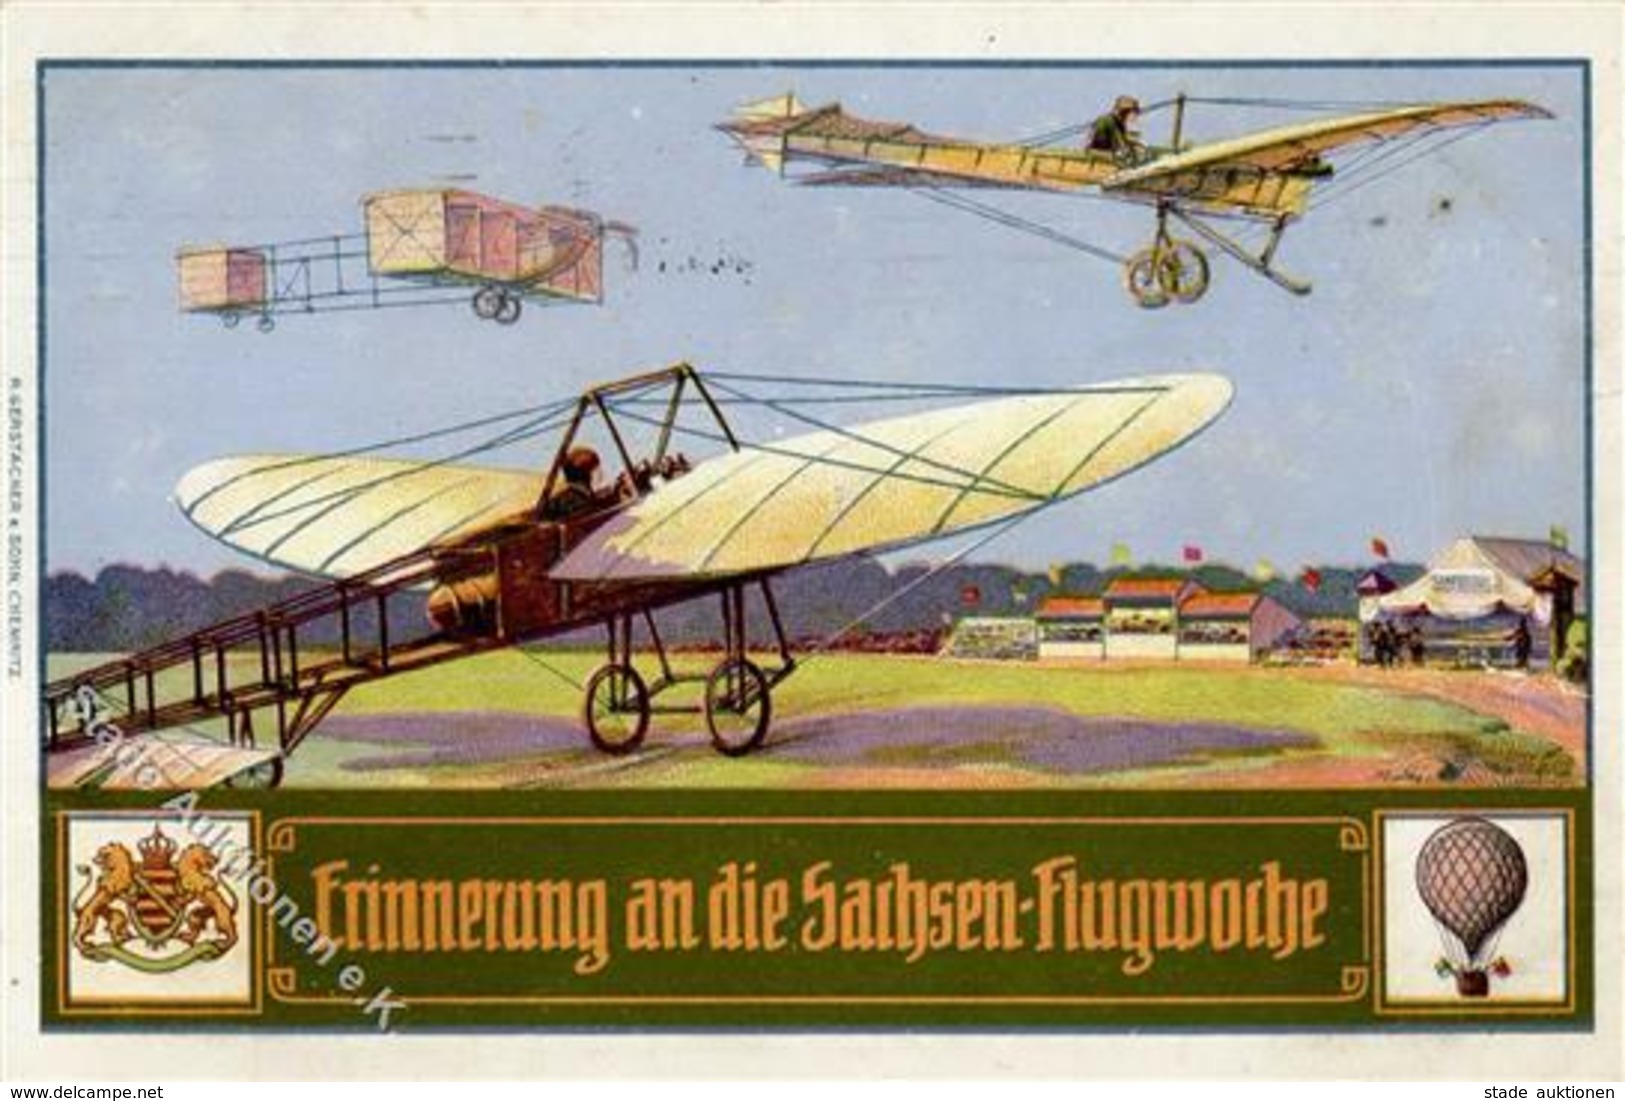 Flugtag Sachsen Flugwoche 1911 I-II (fleckig) - Flieger